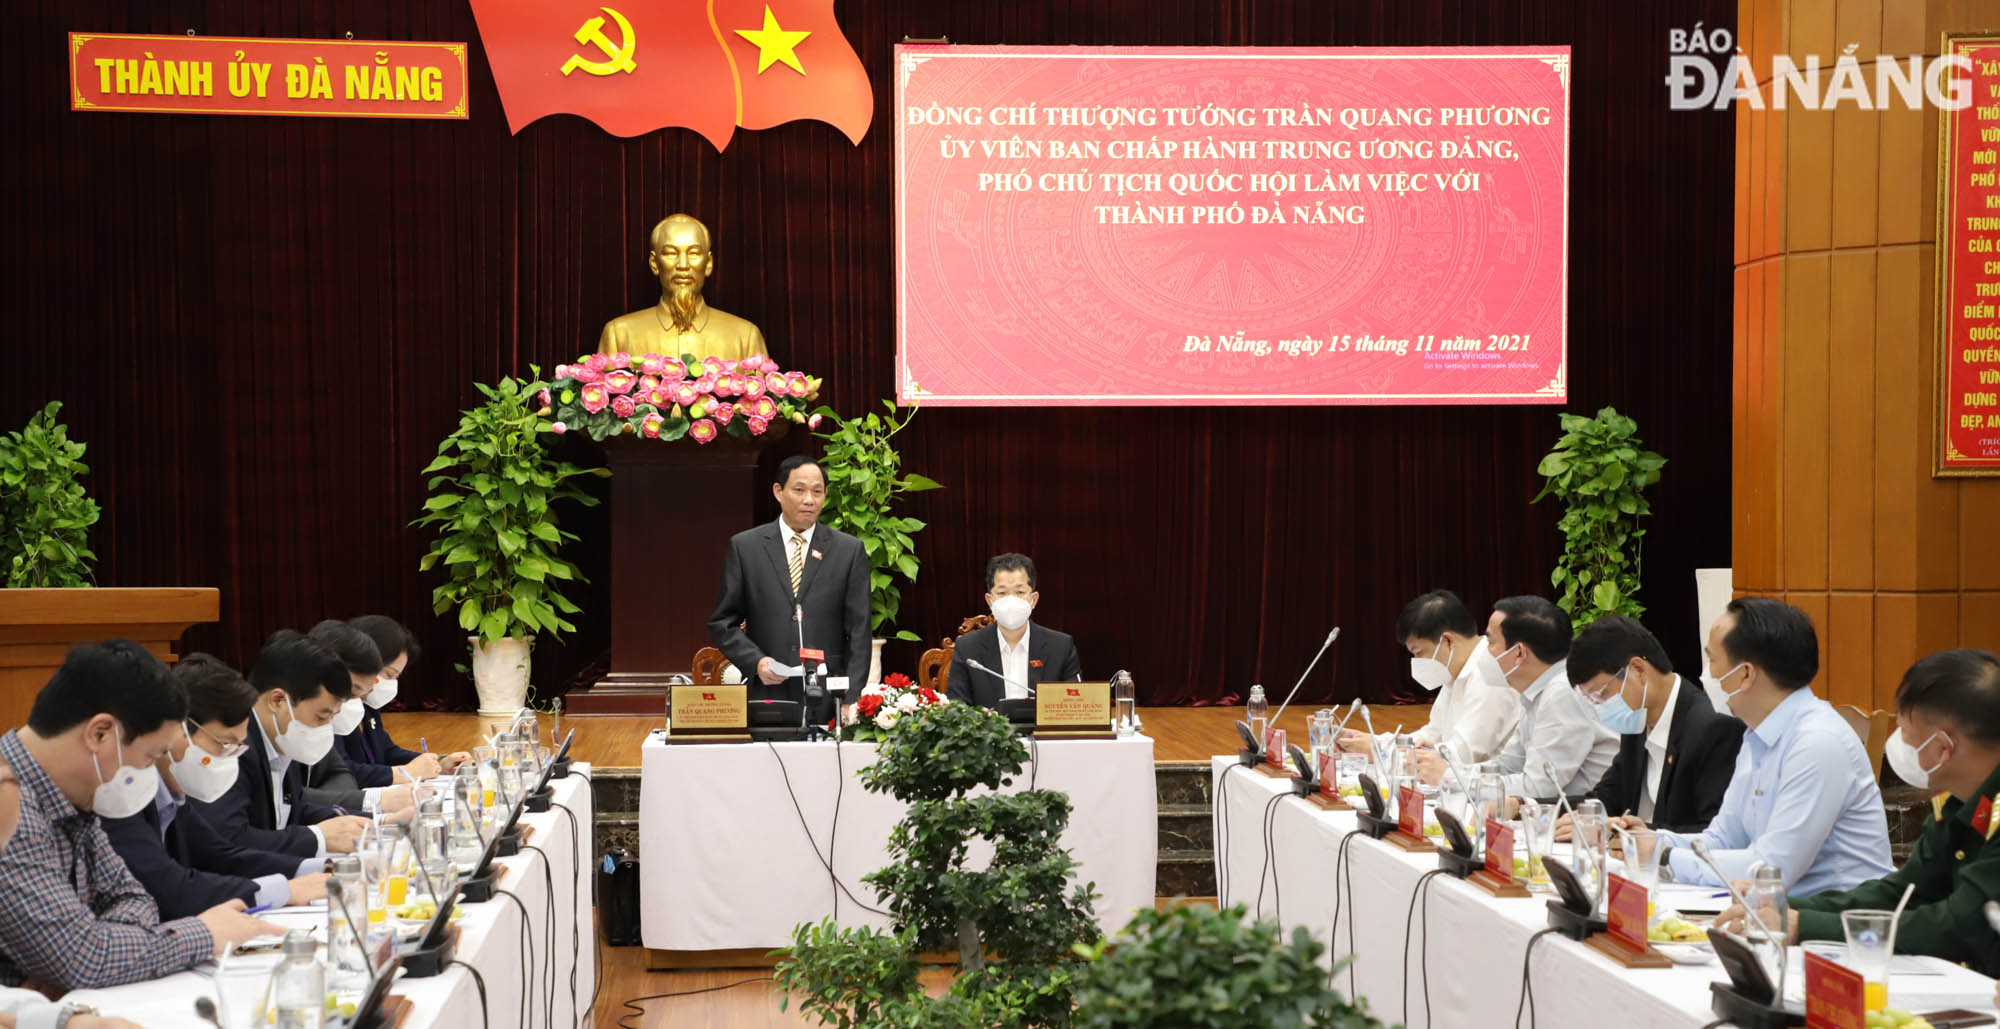 Phó Chủ tịch Quốc hội Trần Quang Phương phát biểu chỉ đạo tại buổi làm việc. Ảnh: NGỌC PHÚ